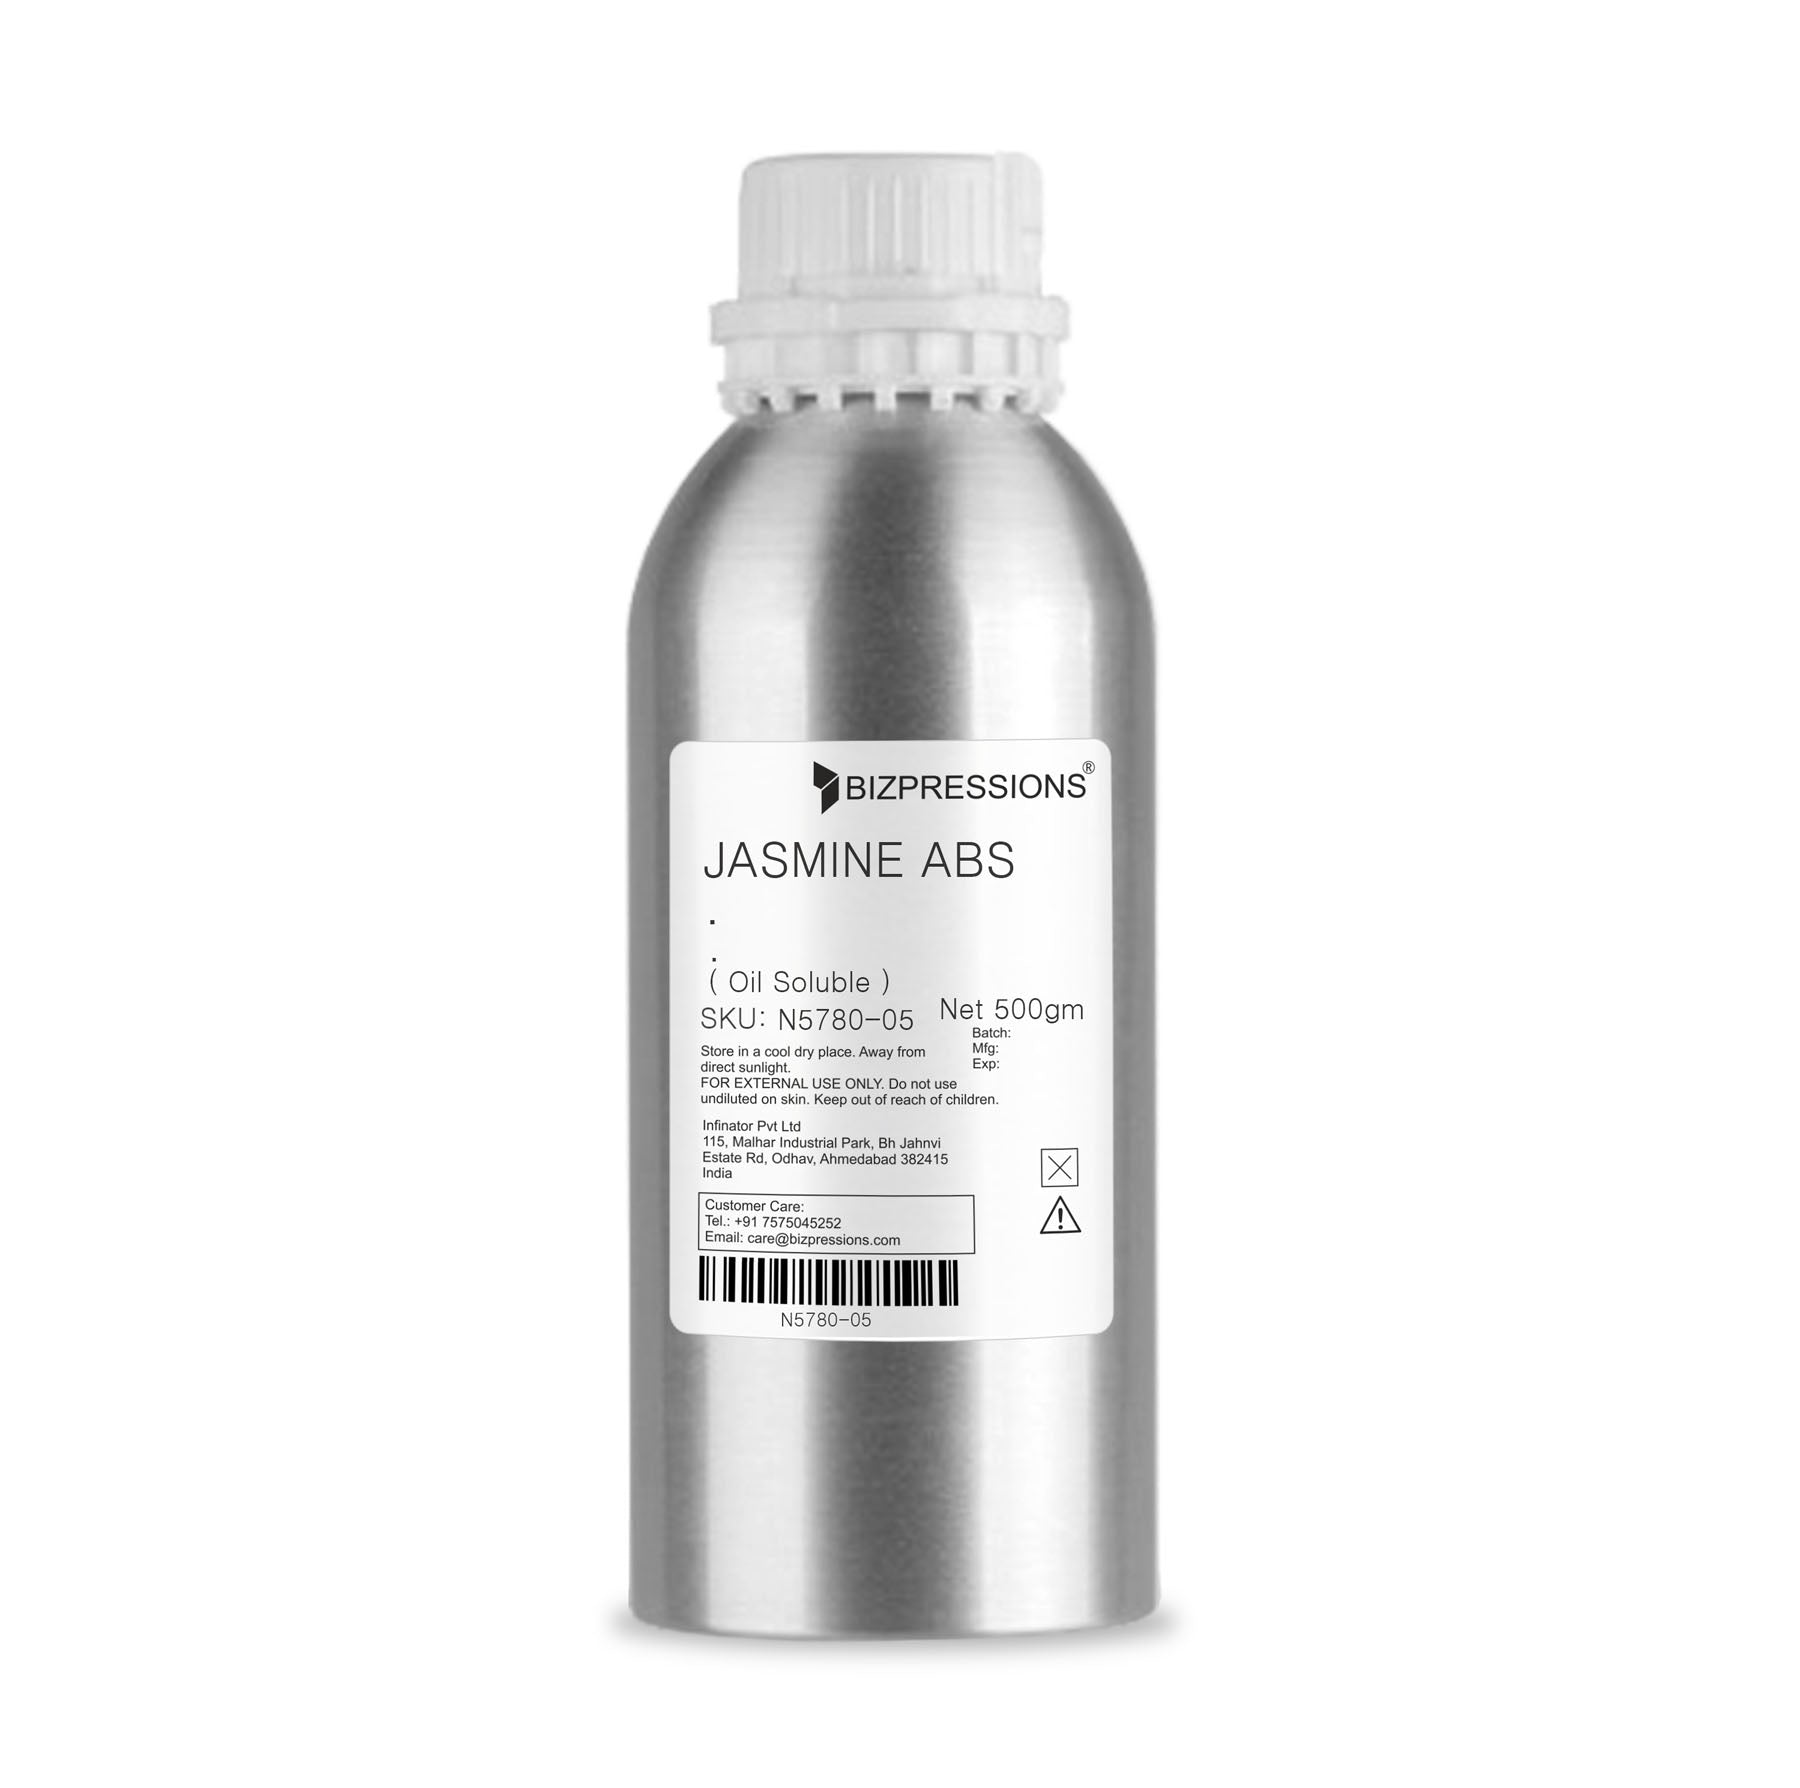 JASMINE ABS - Fragrance ( Oil Soluble ) - 500 gm